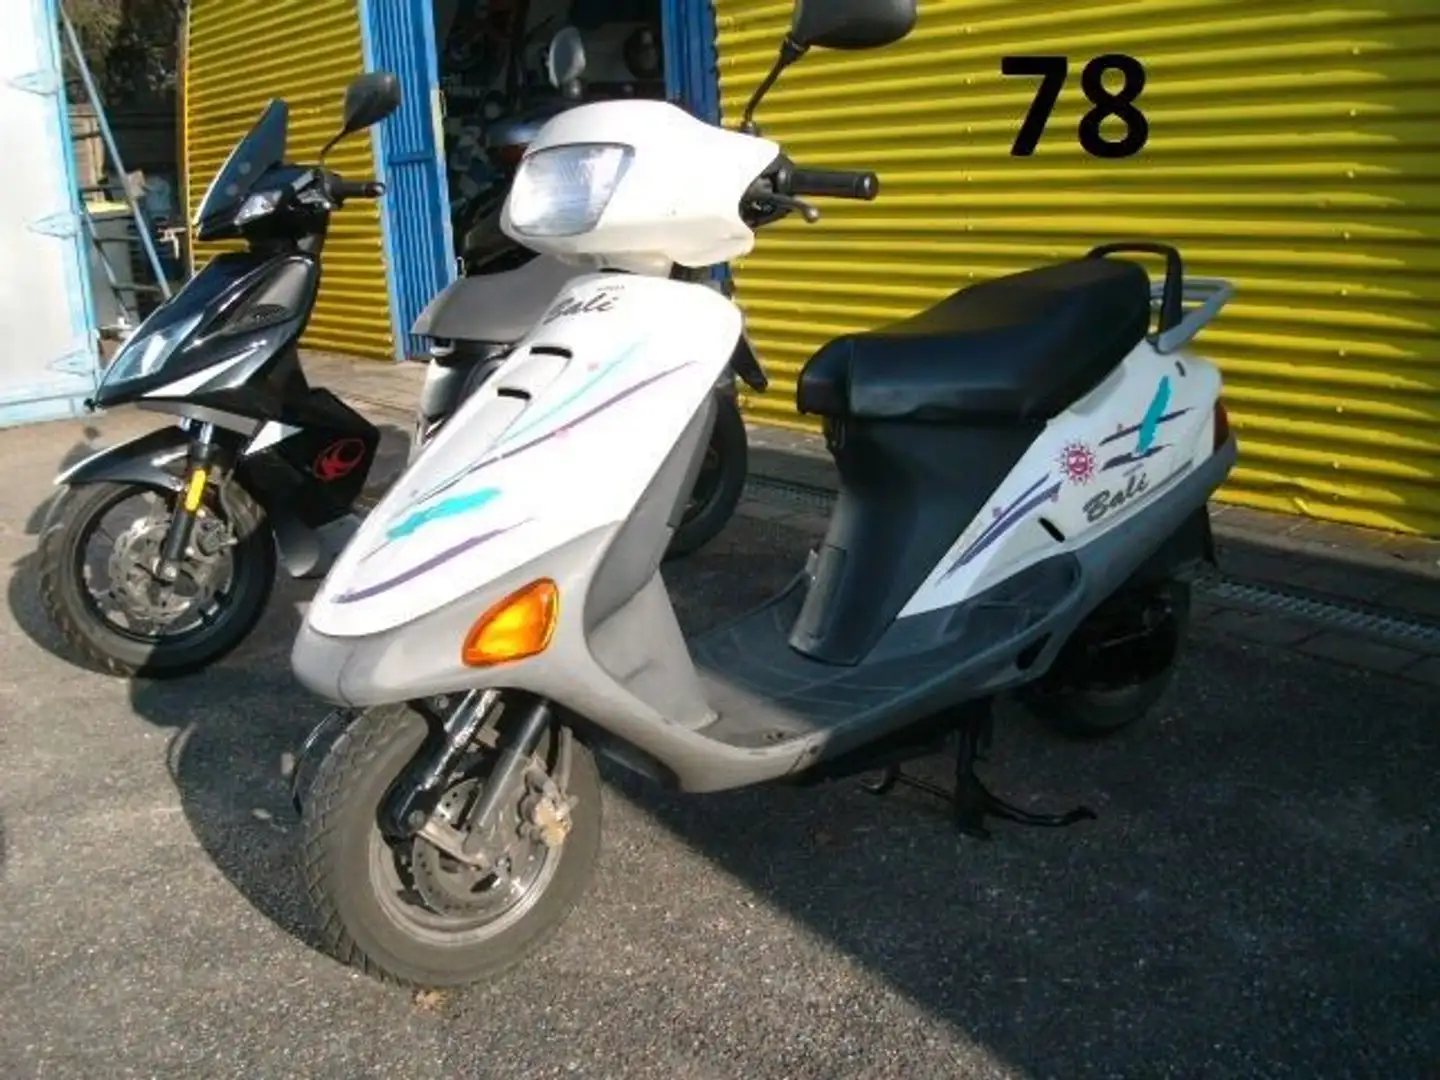 Honda SJ 50 Bali Roller/Scooter in Weiß gebraucht in Frankenthal für € 990,-